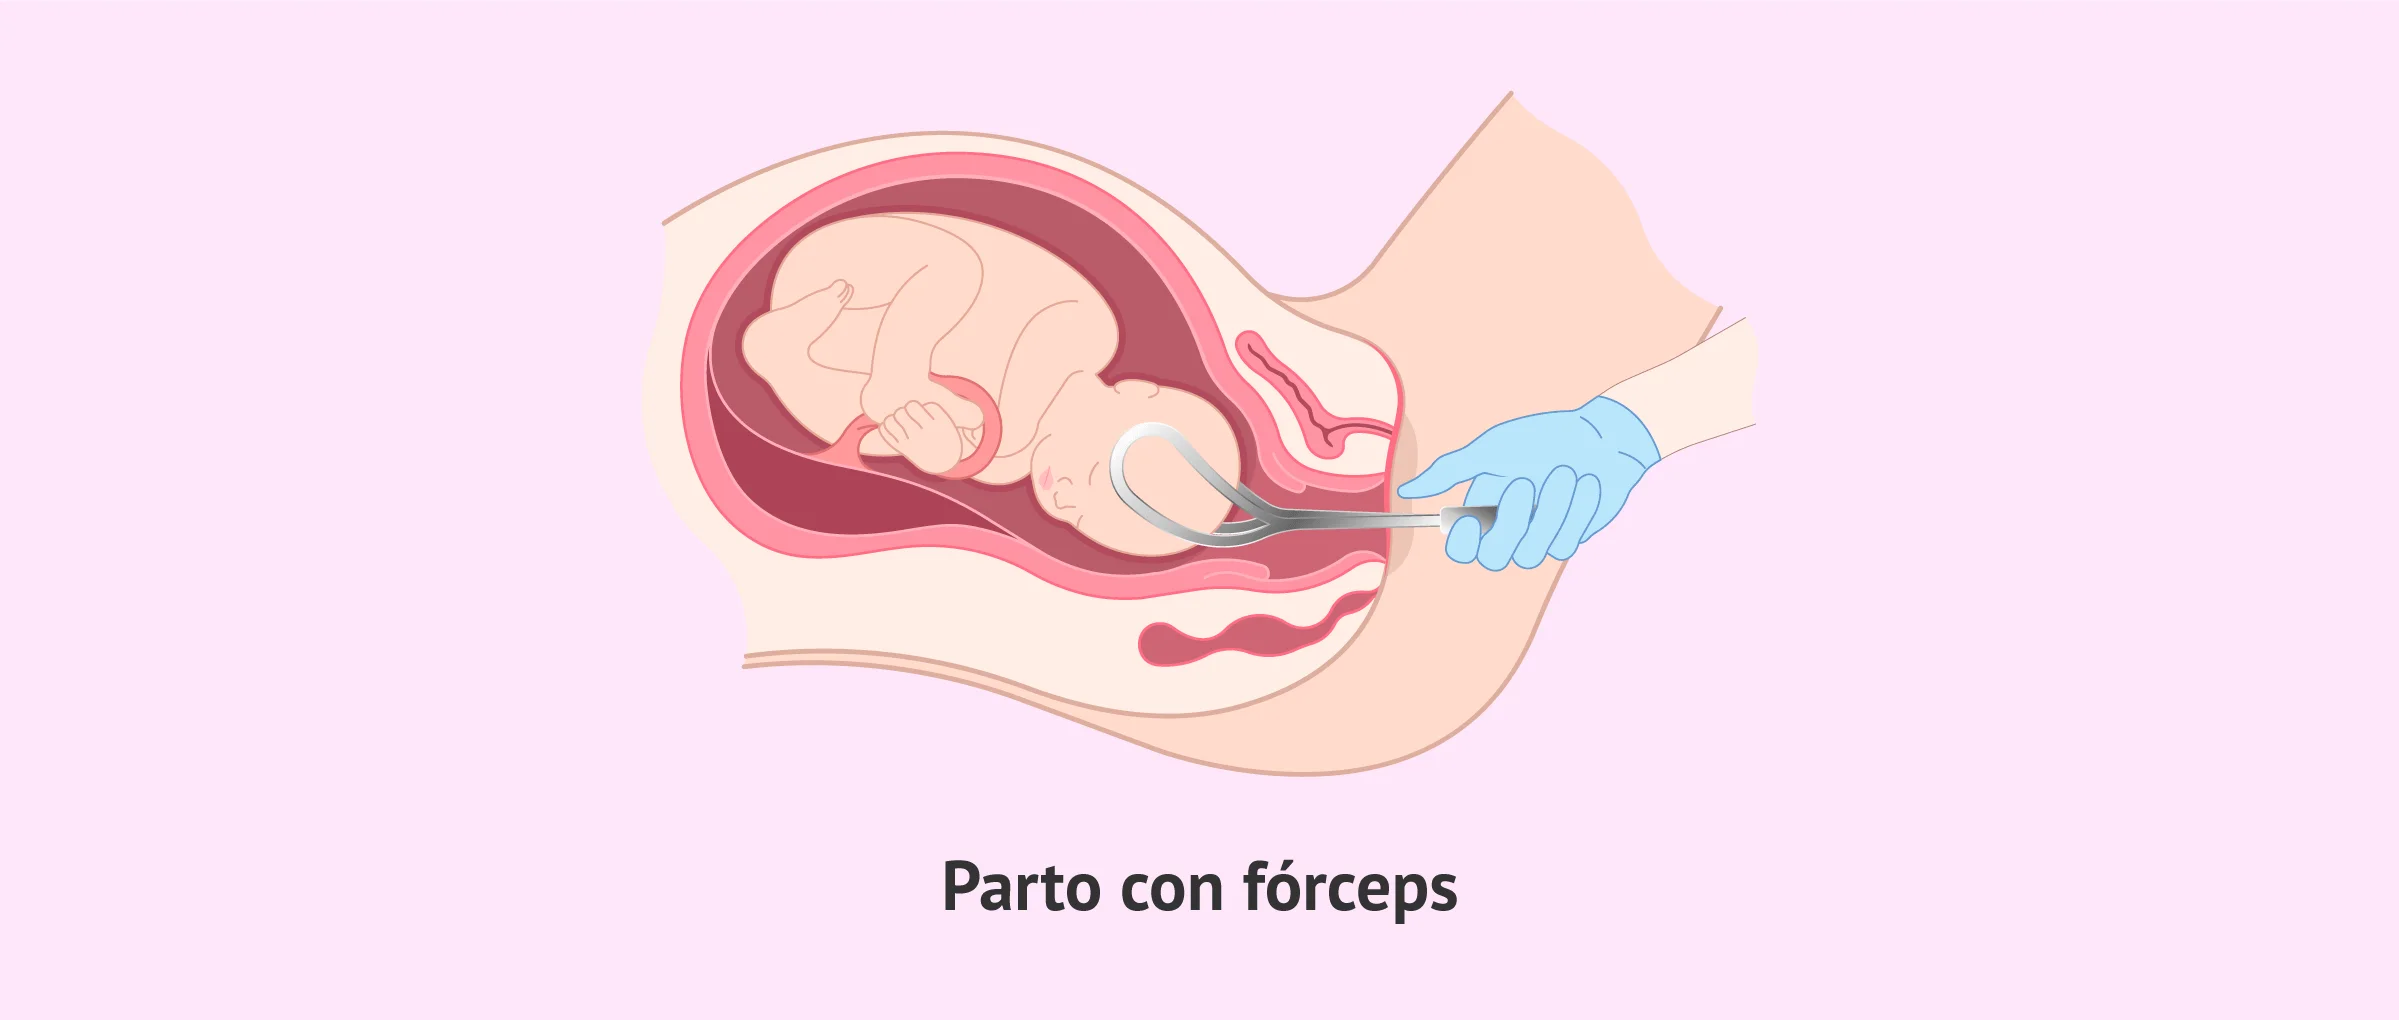 El parto con fórceps